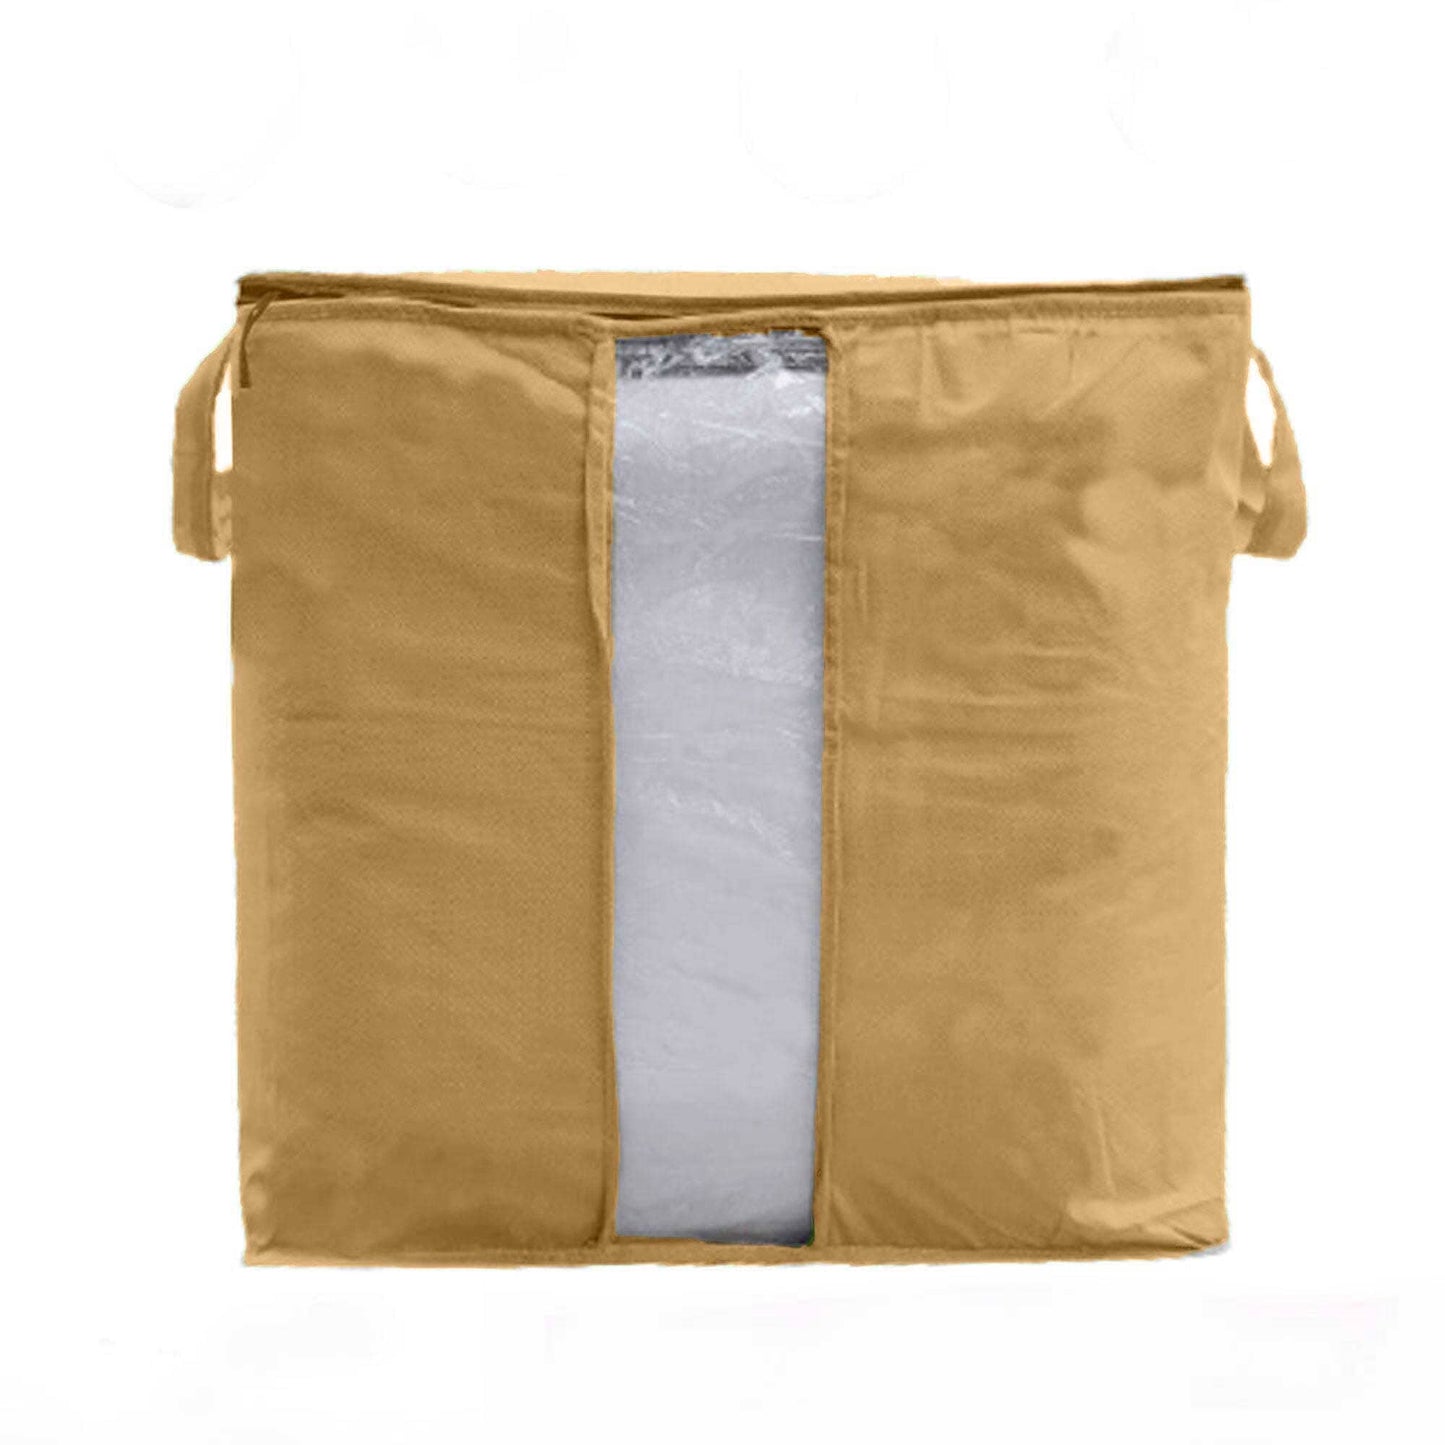 Ketrzyn Clothing Storage Folding Heavy Duty Bag Storage Bag LPK Brown 